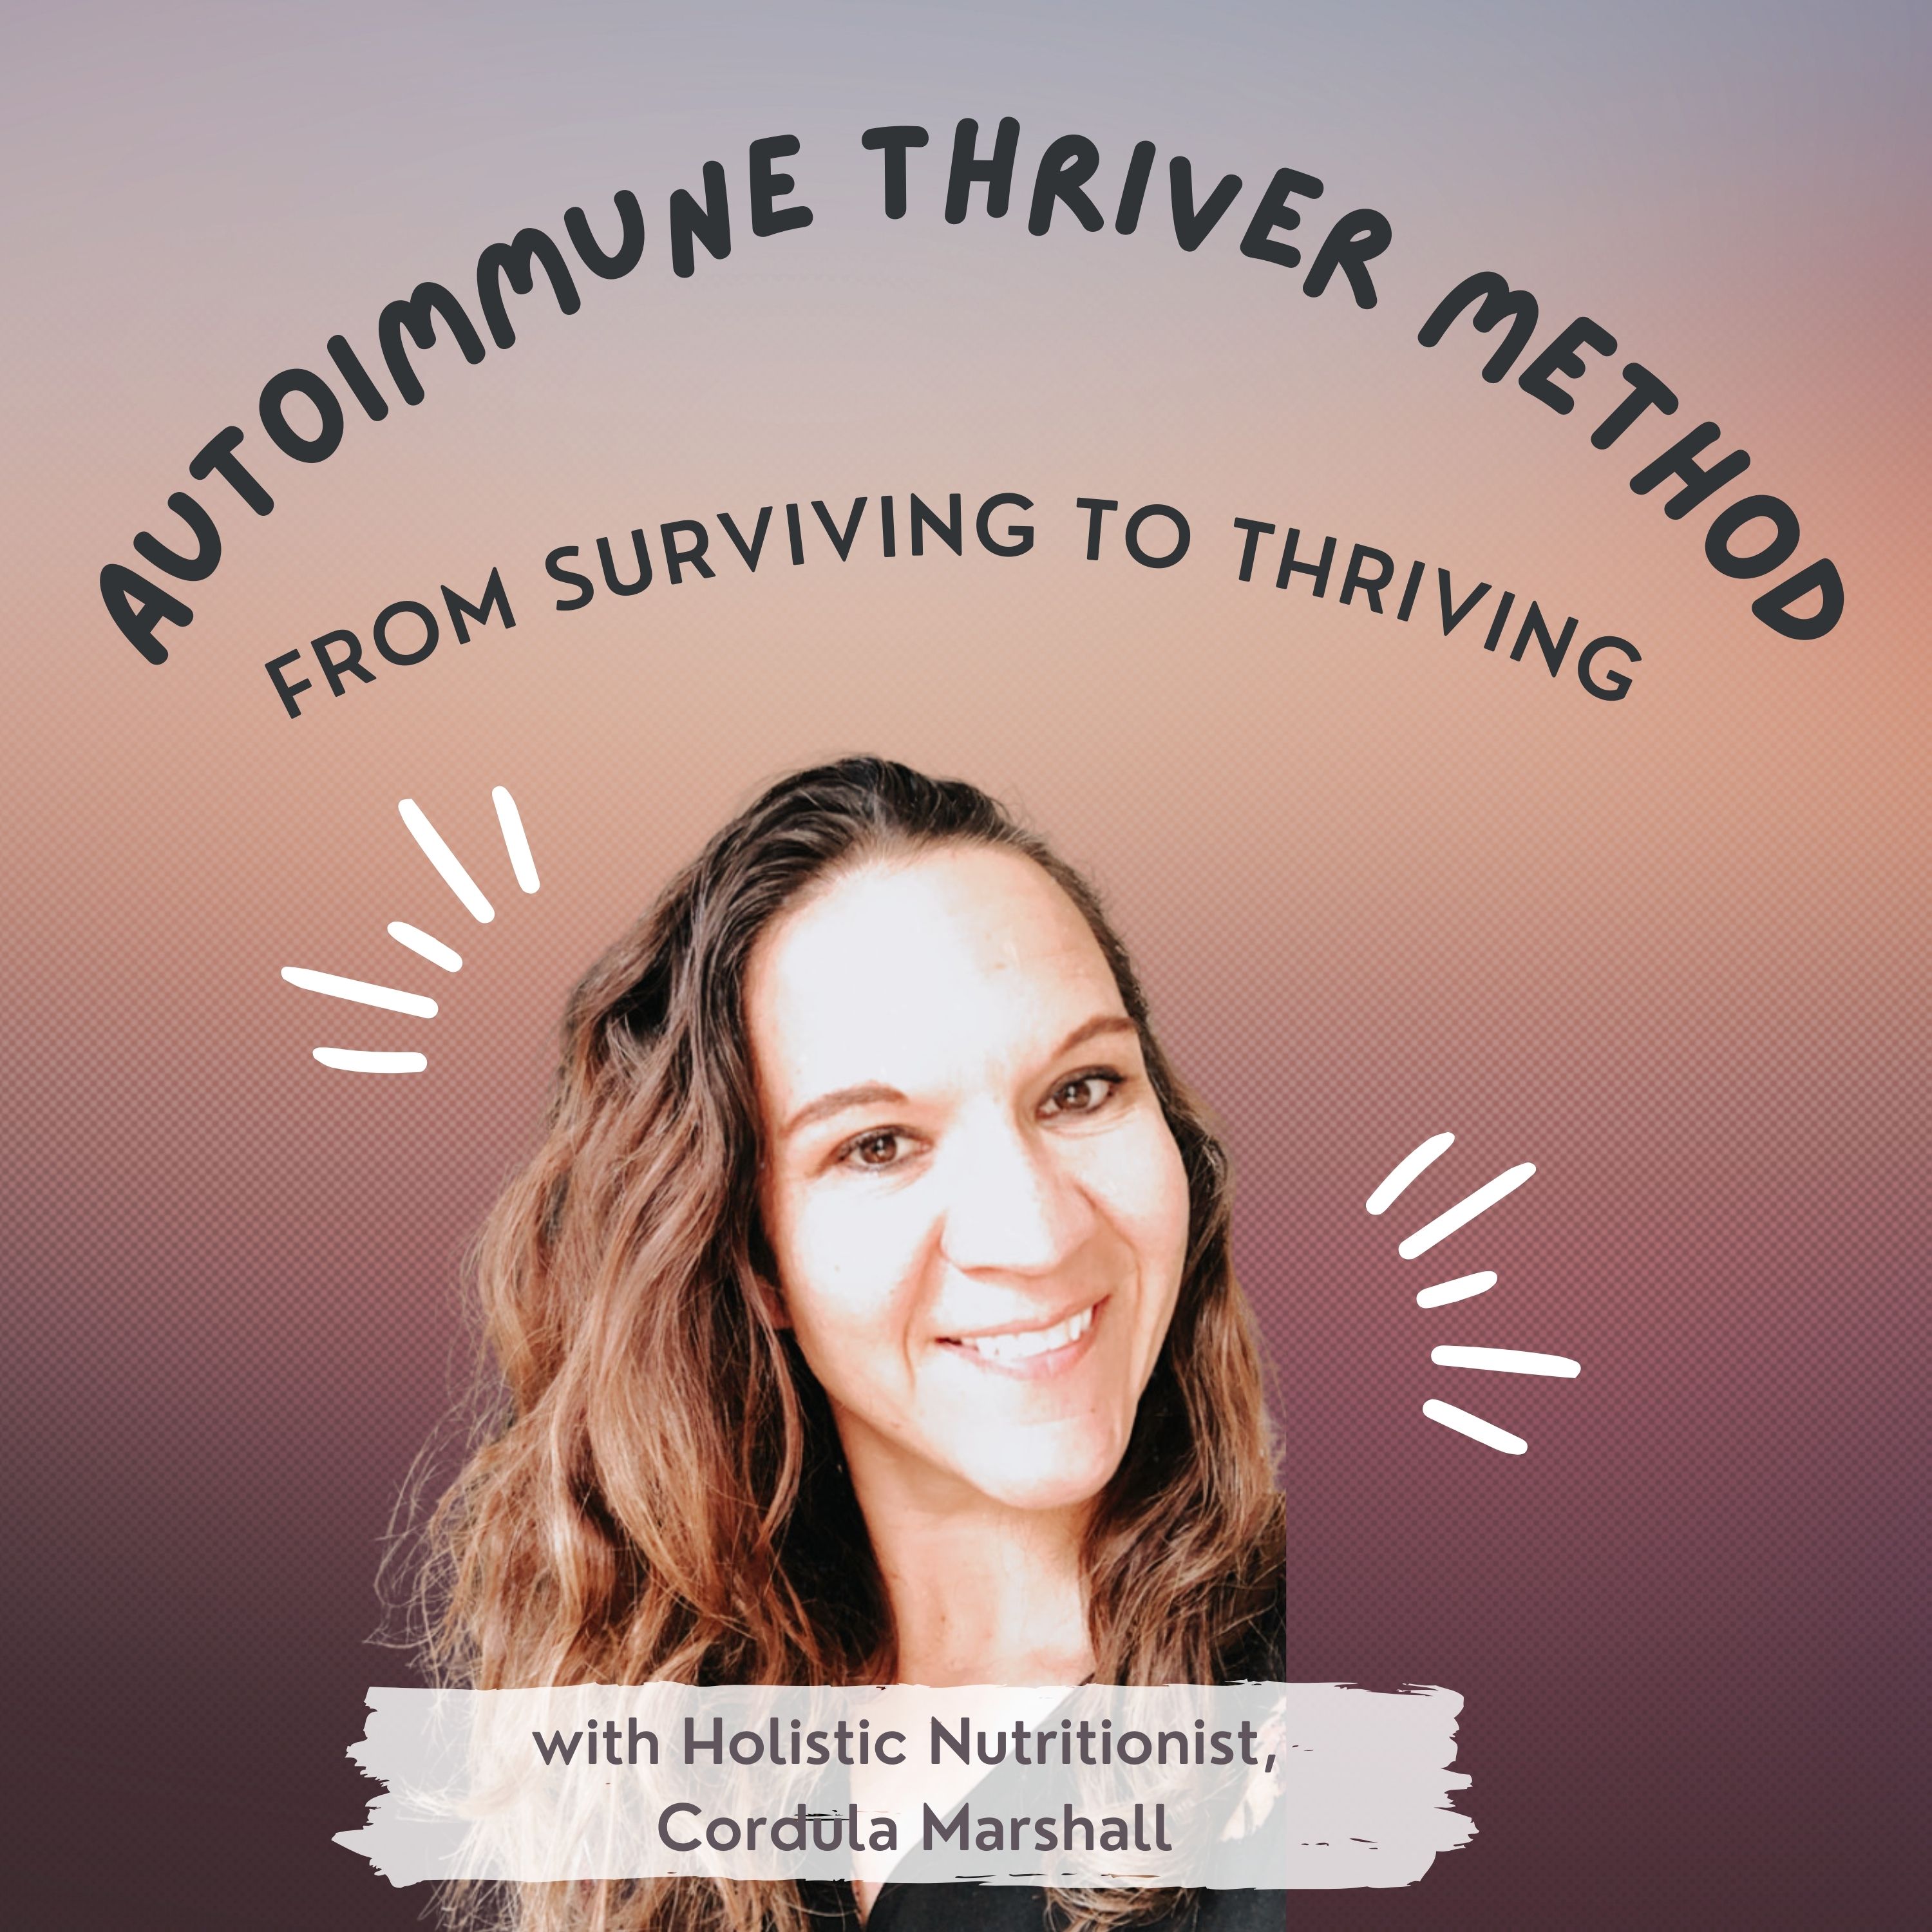 The Autoimmune Thriver Method